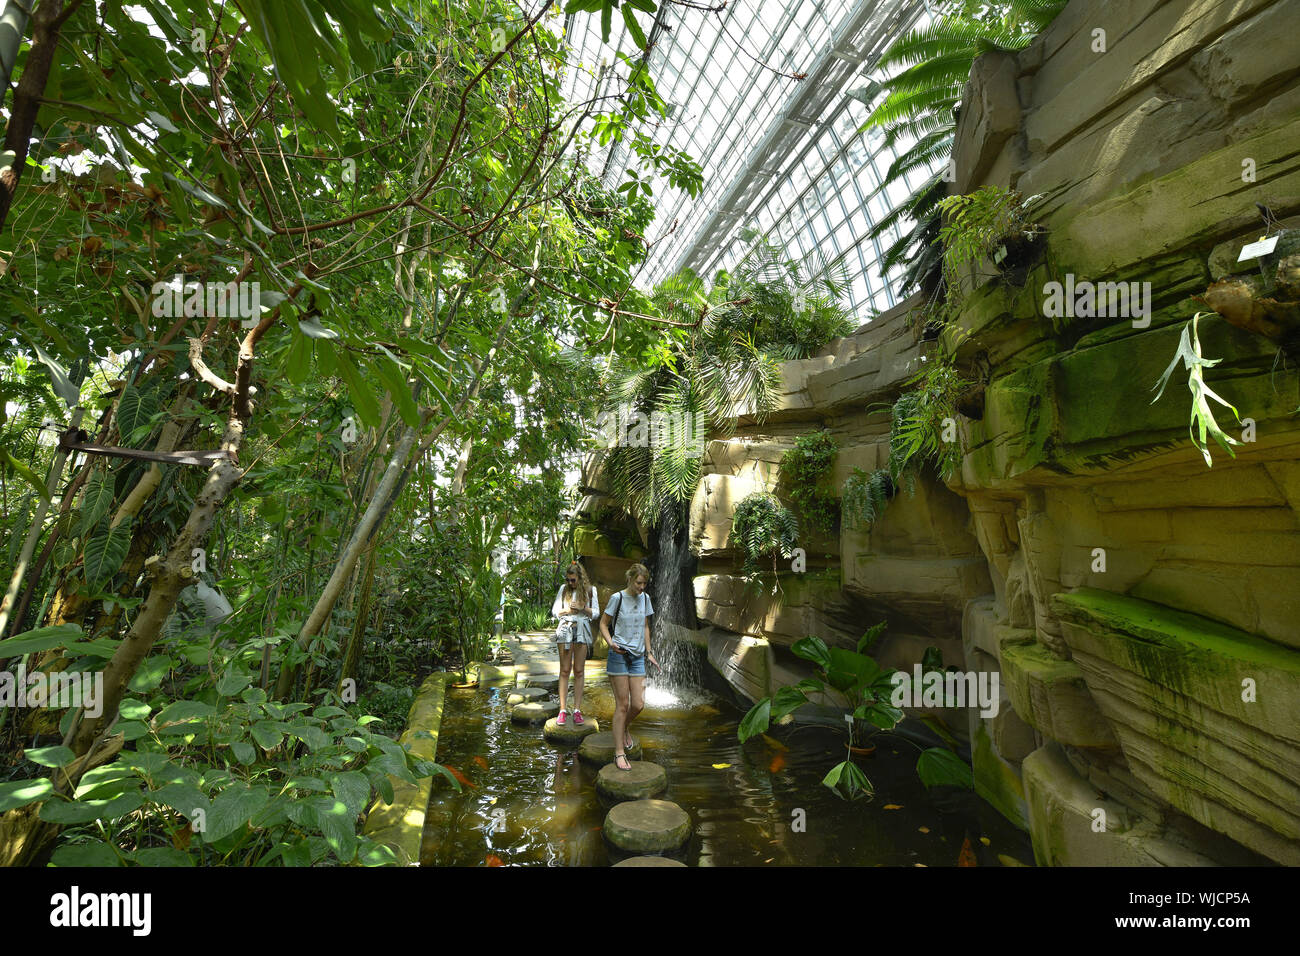 View, architecture, Berlin, botanical garden, Germany, building, building, greenhouse, greenhouse, greenhouse, big tropical house, big tropical house, Stock Photo